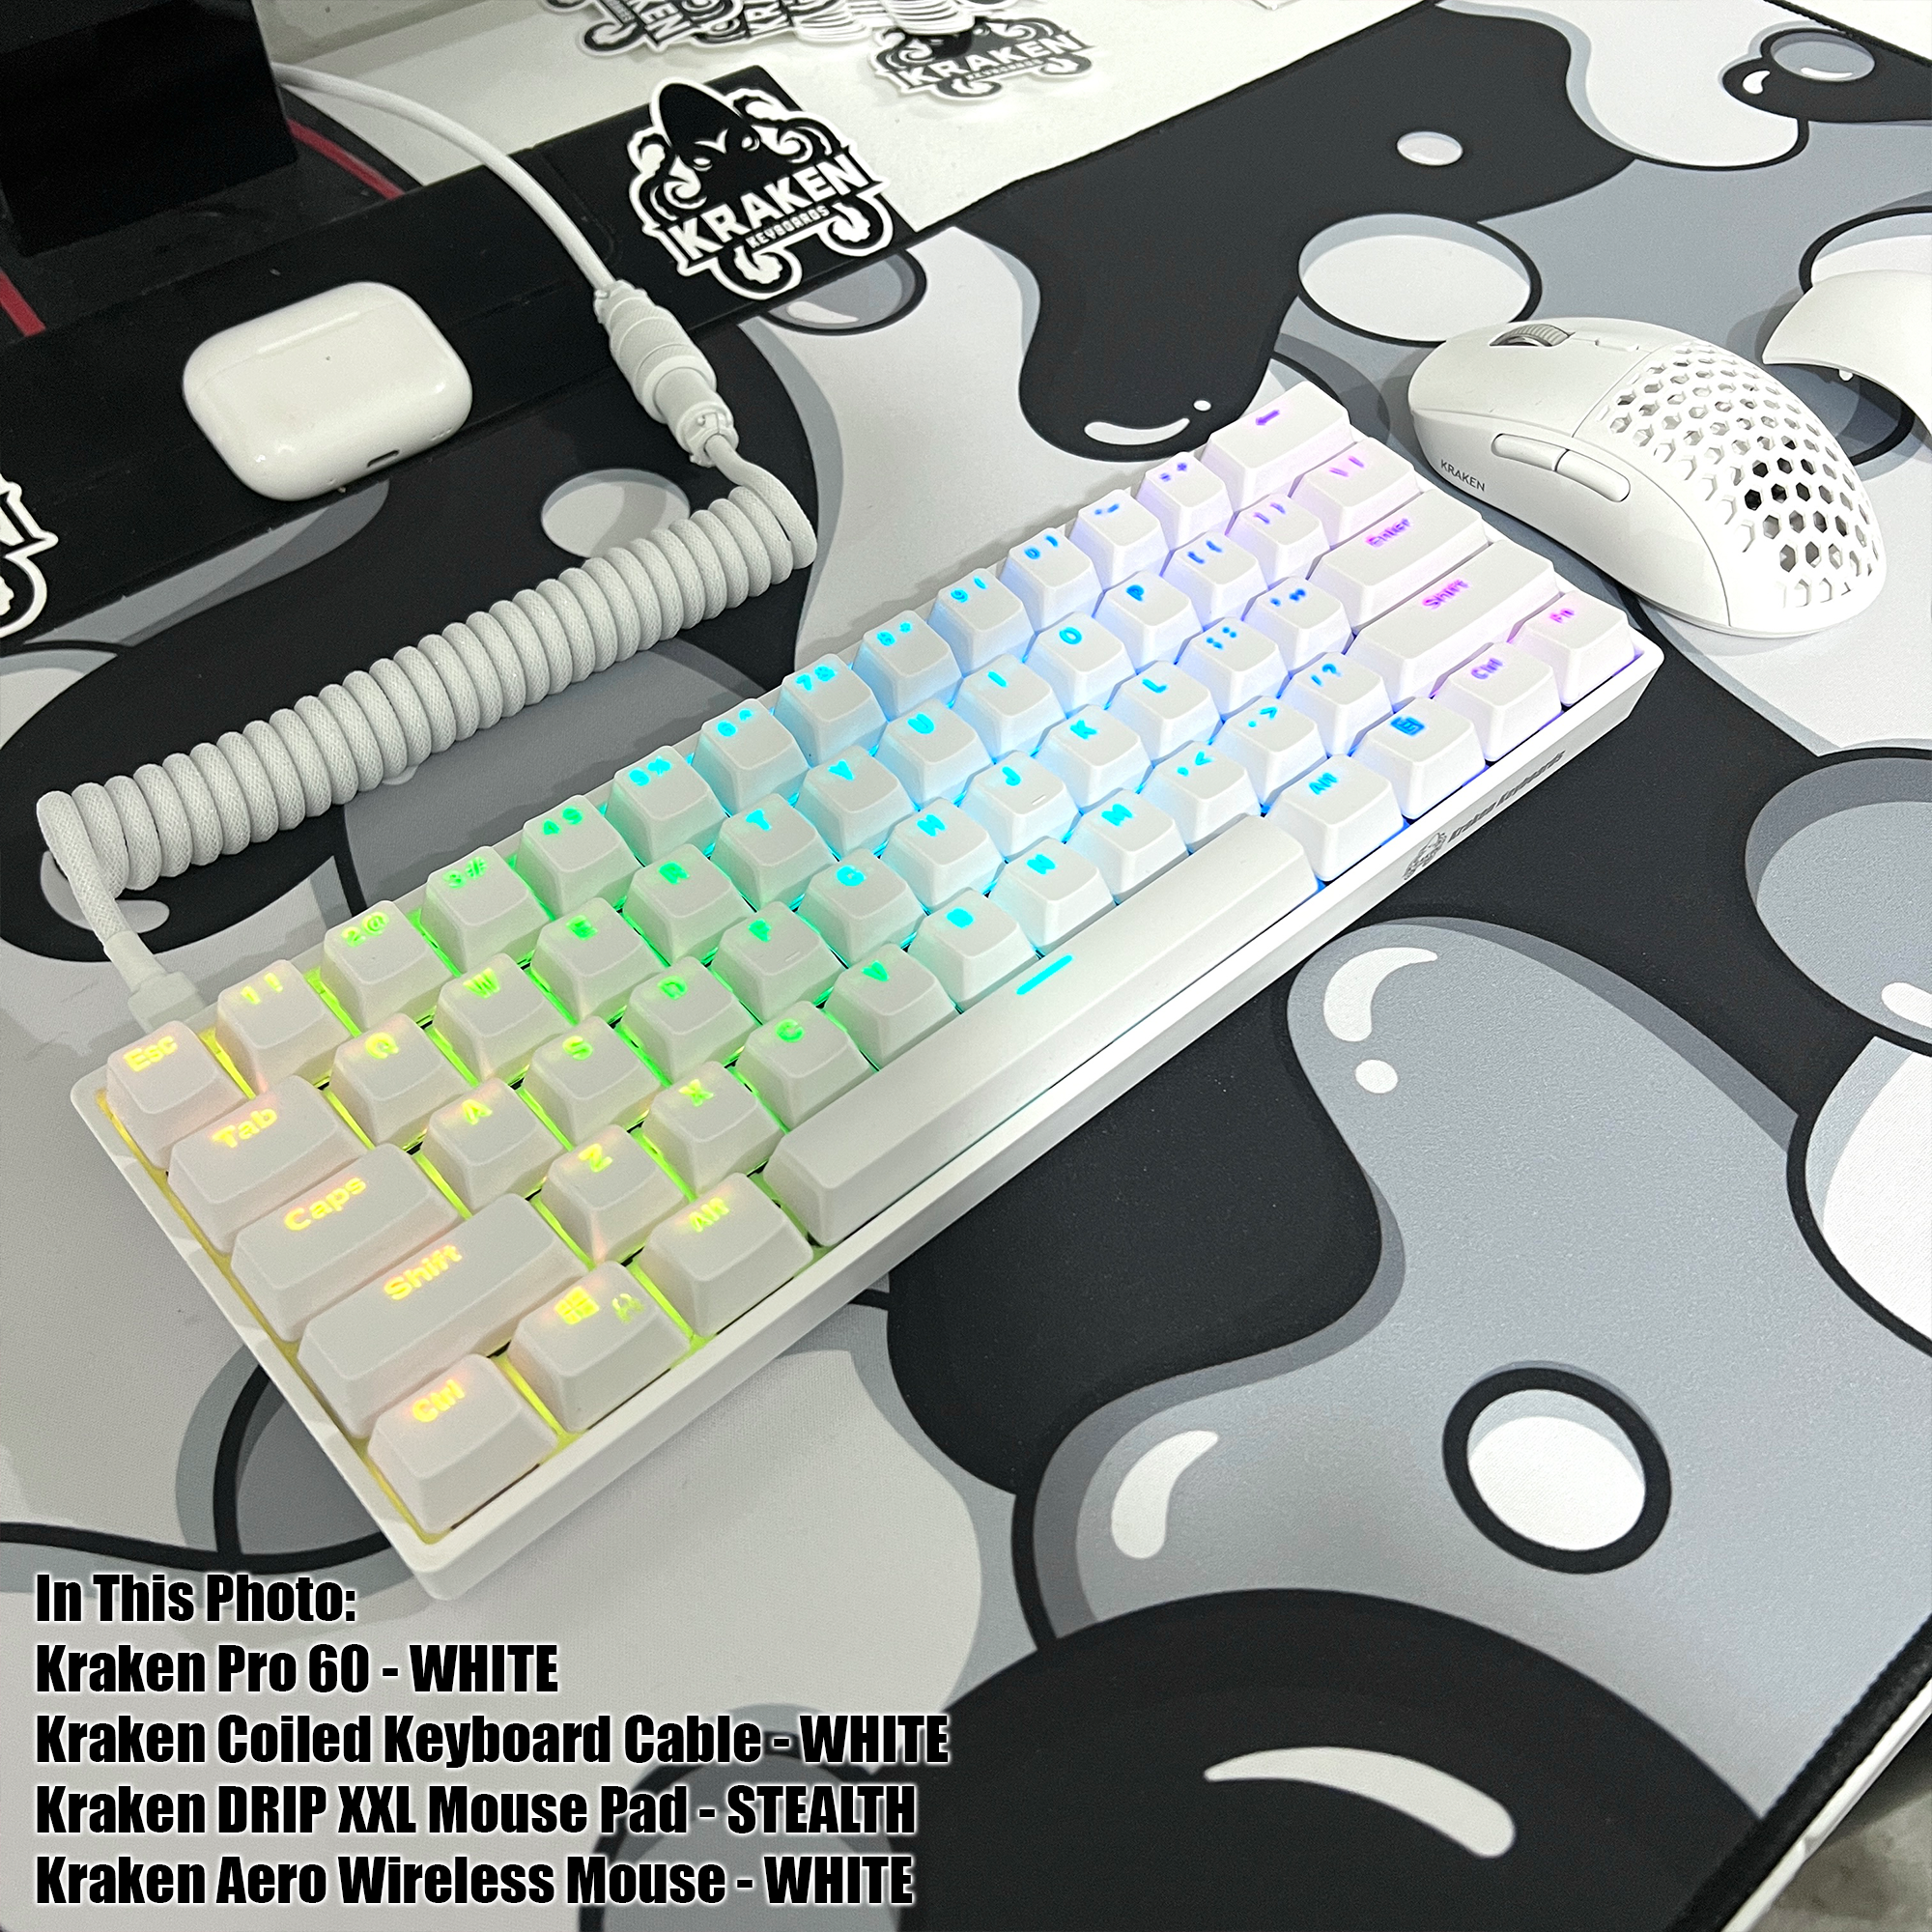 This Rainbow Edition Kraken Pro 60 is - Kraken Keyboards